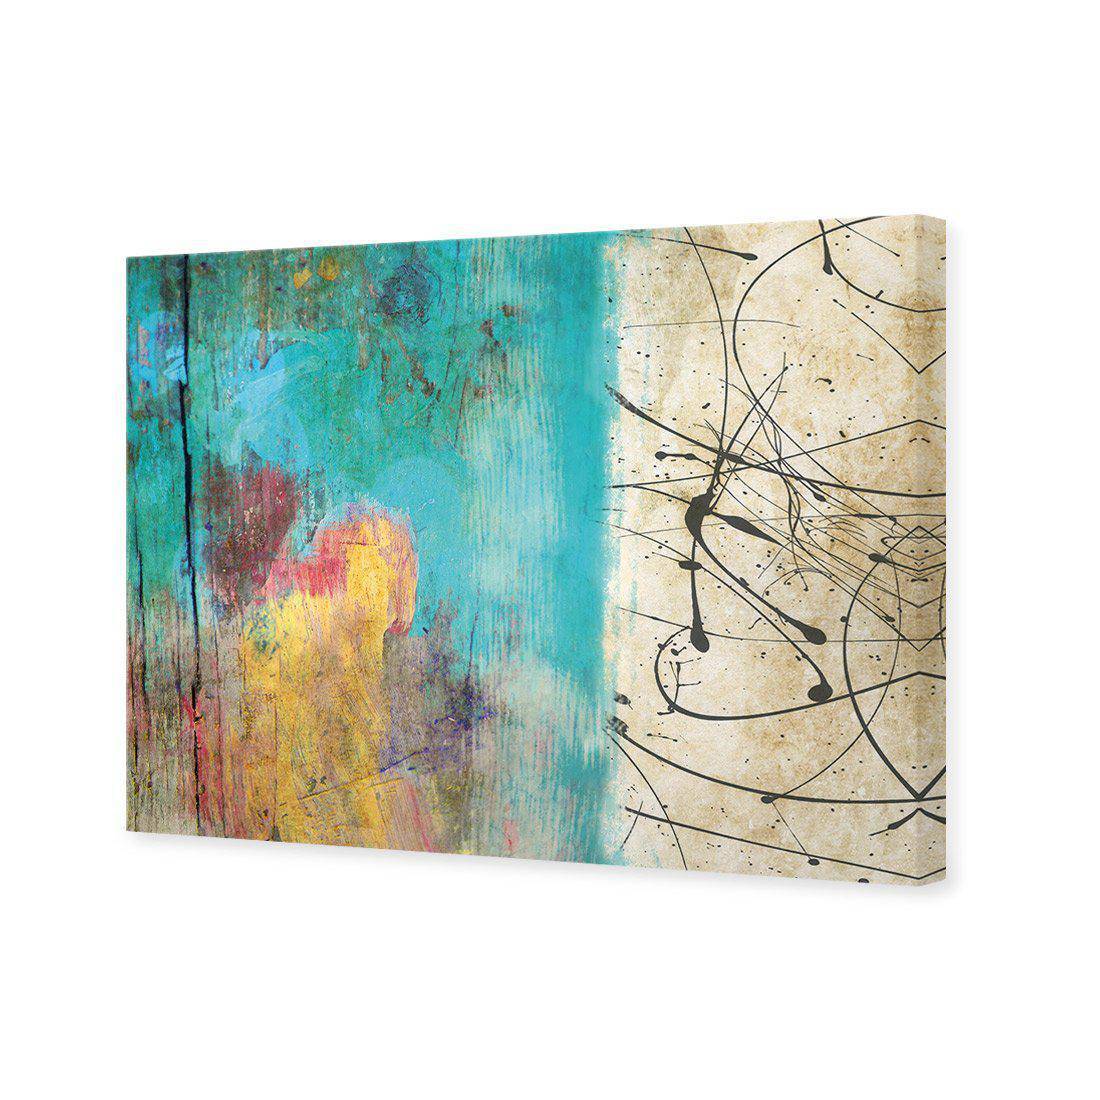 Painted Grunge Splatter Canvas Art-Canvas-Wall Art Designs-45x30cm-Canvas - No Frame-Wall Art Designs